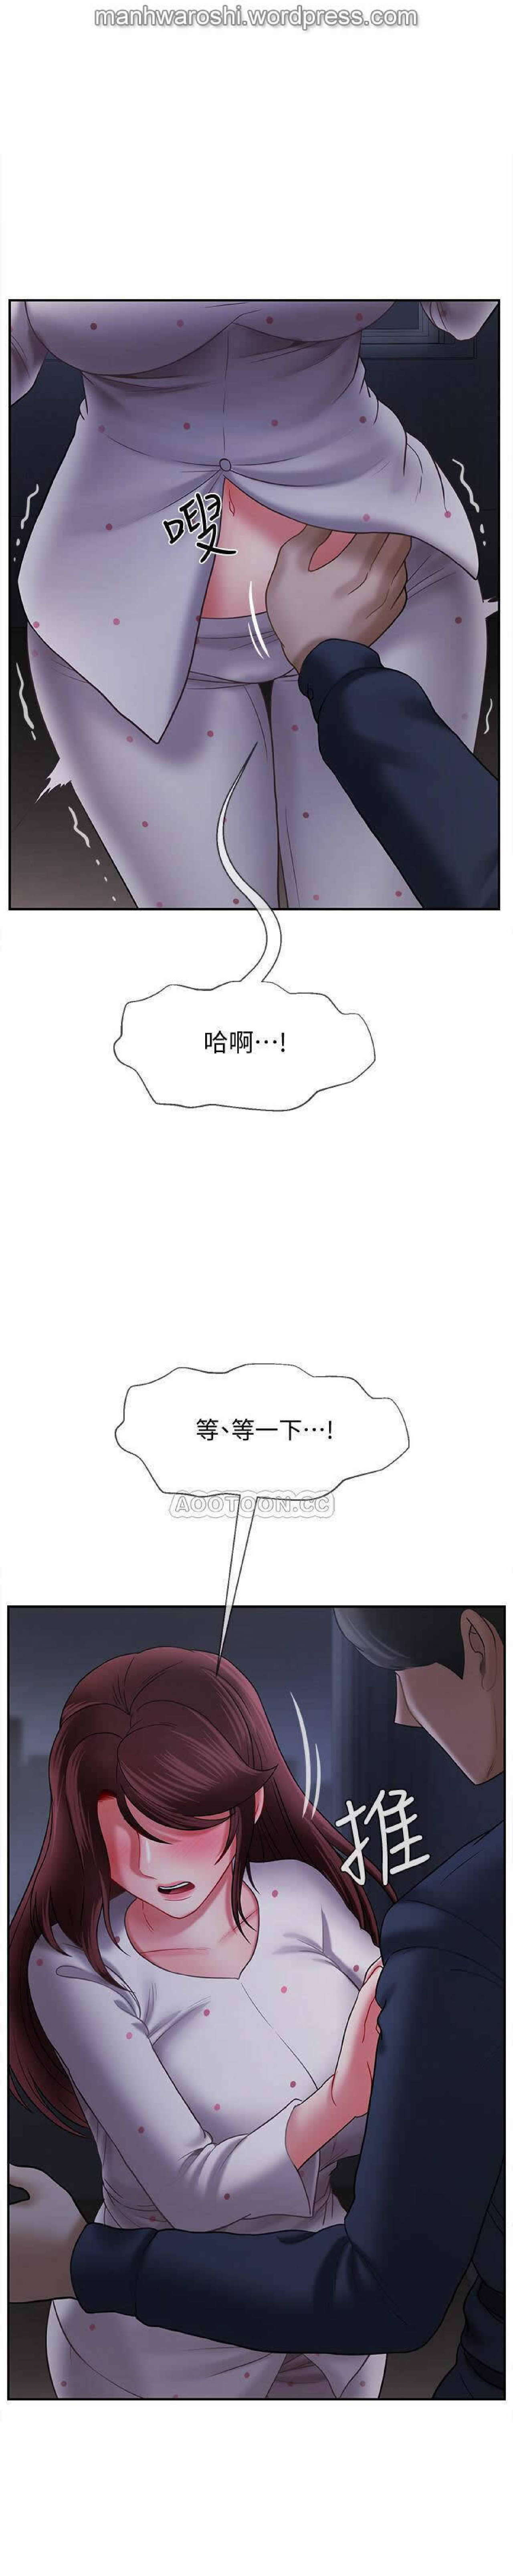 坏老师 | PHYSICAL CLASSROOM 13 [Chinese] Manhwa 